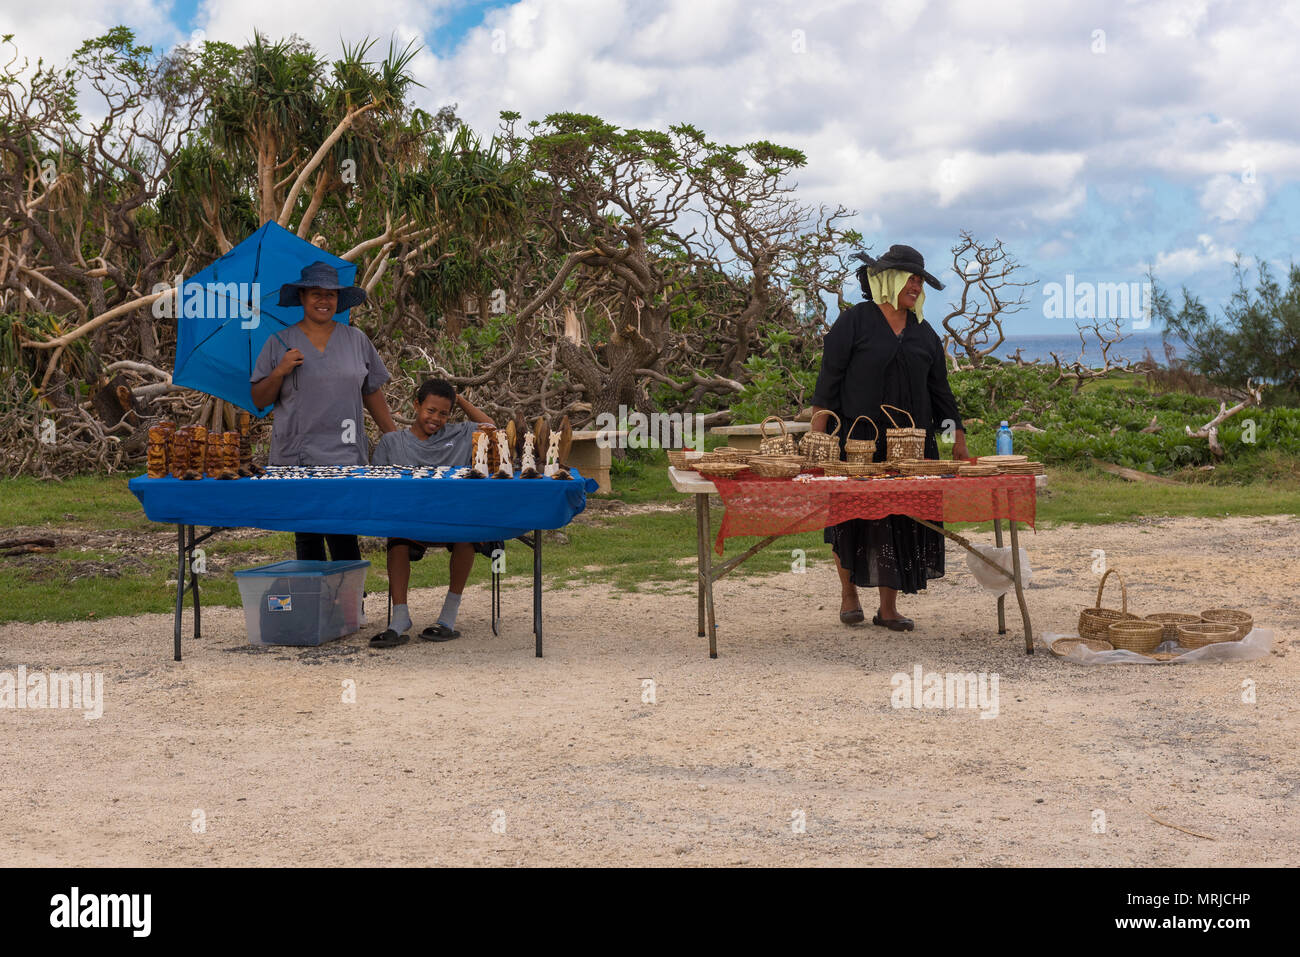 Houma, Tonga - - März 10, 2018. Händler Anzeige Körbe und Kunstwerke zum Verkauf in der Nähe der Stadt Houma in Tonga. Nur für den redaktionellen Gebrauch bestimmt. Stockfoto